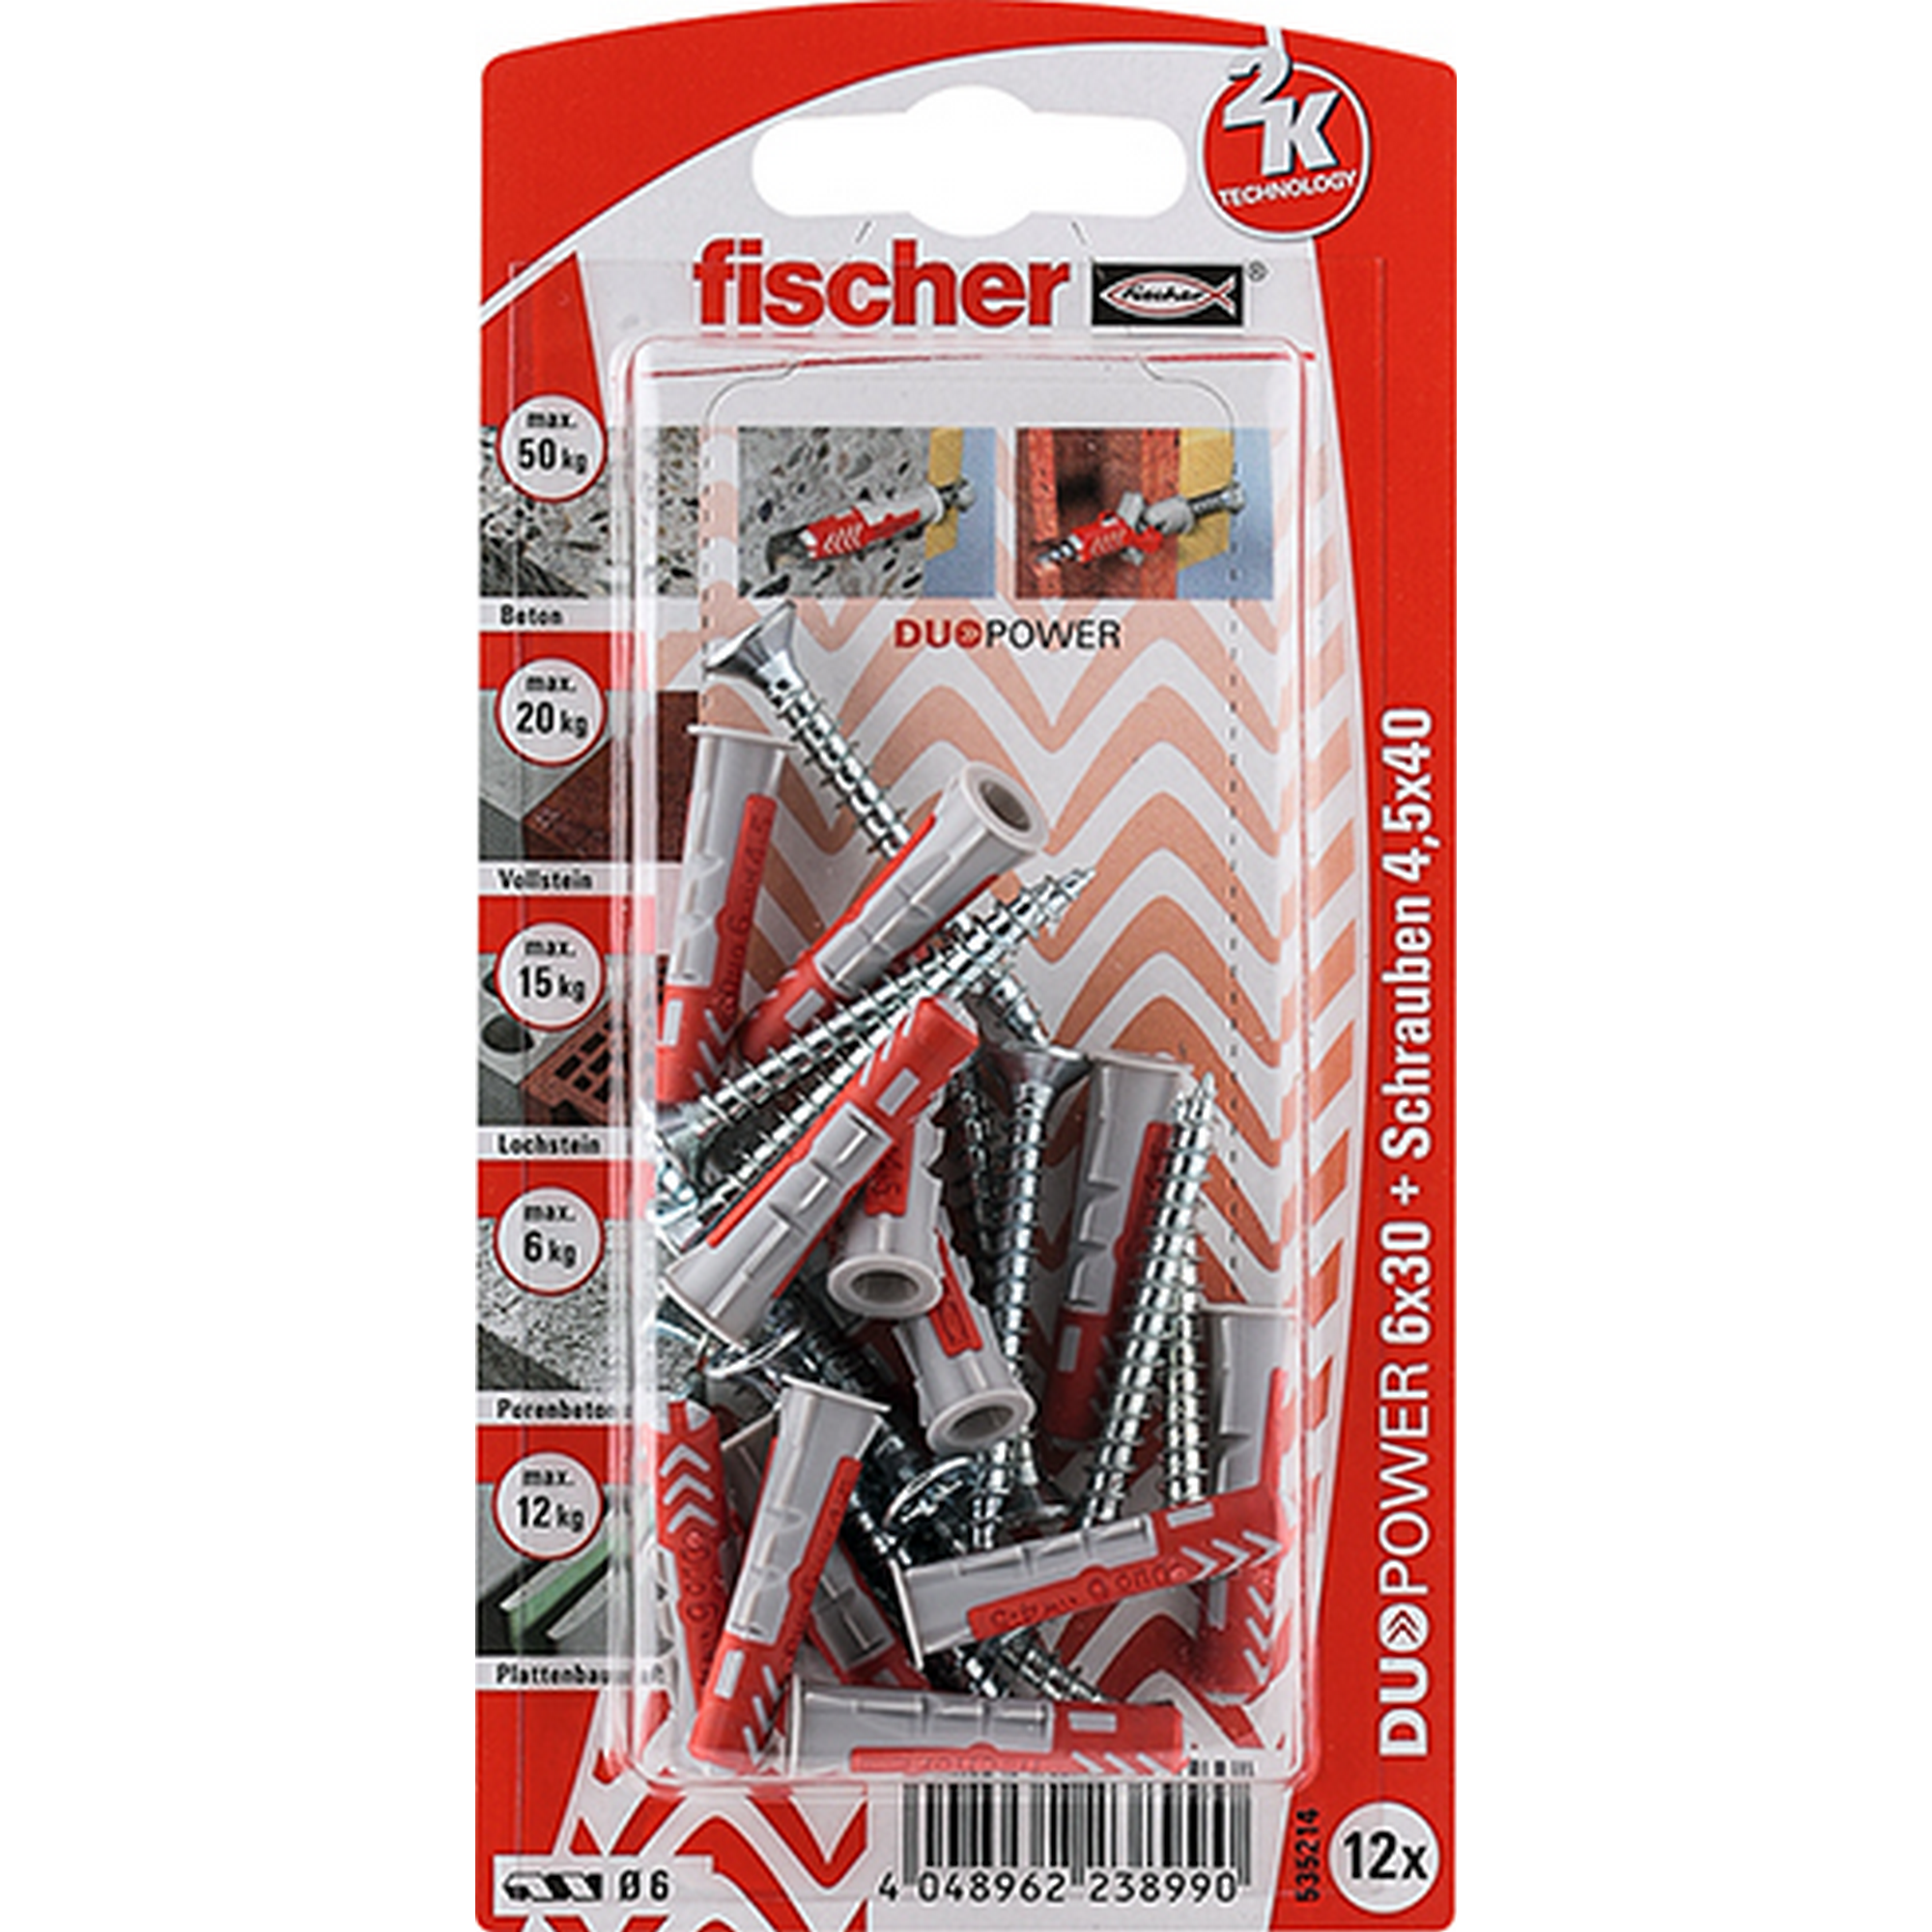 fischer DUOPOWER 6 x 30 S mit Schraube 12 Stück + product picture